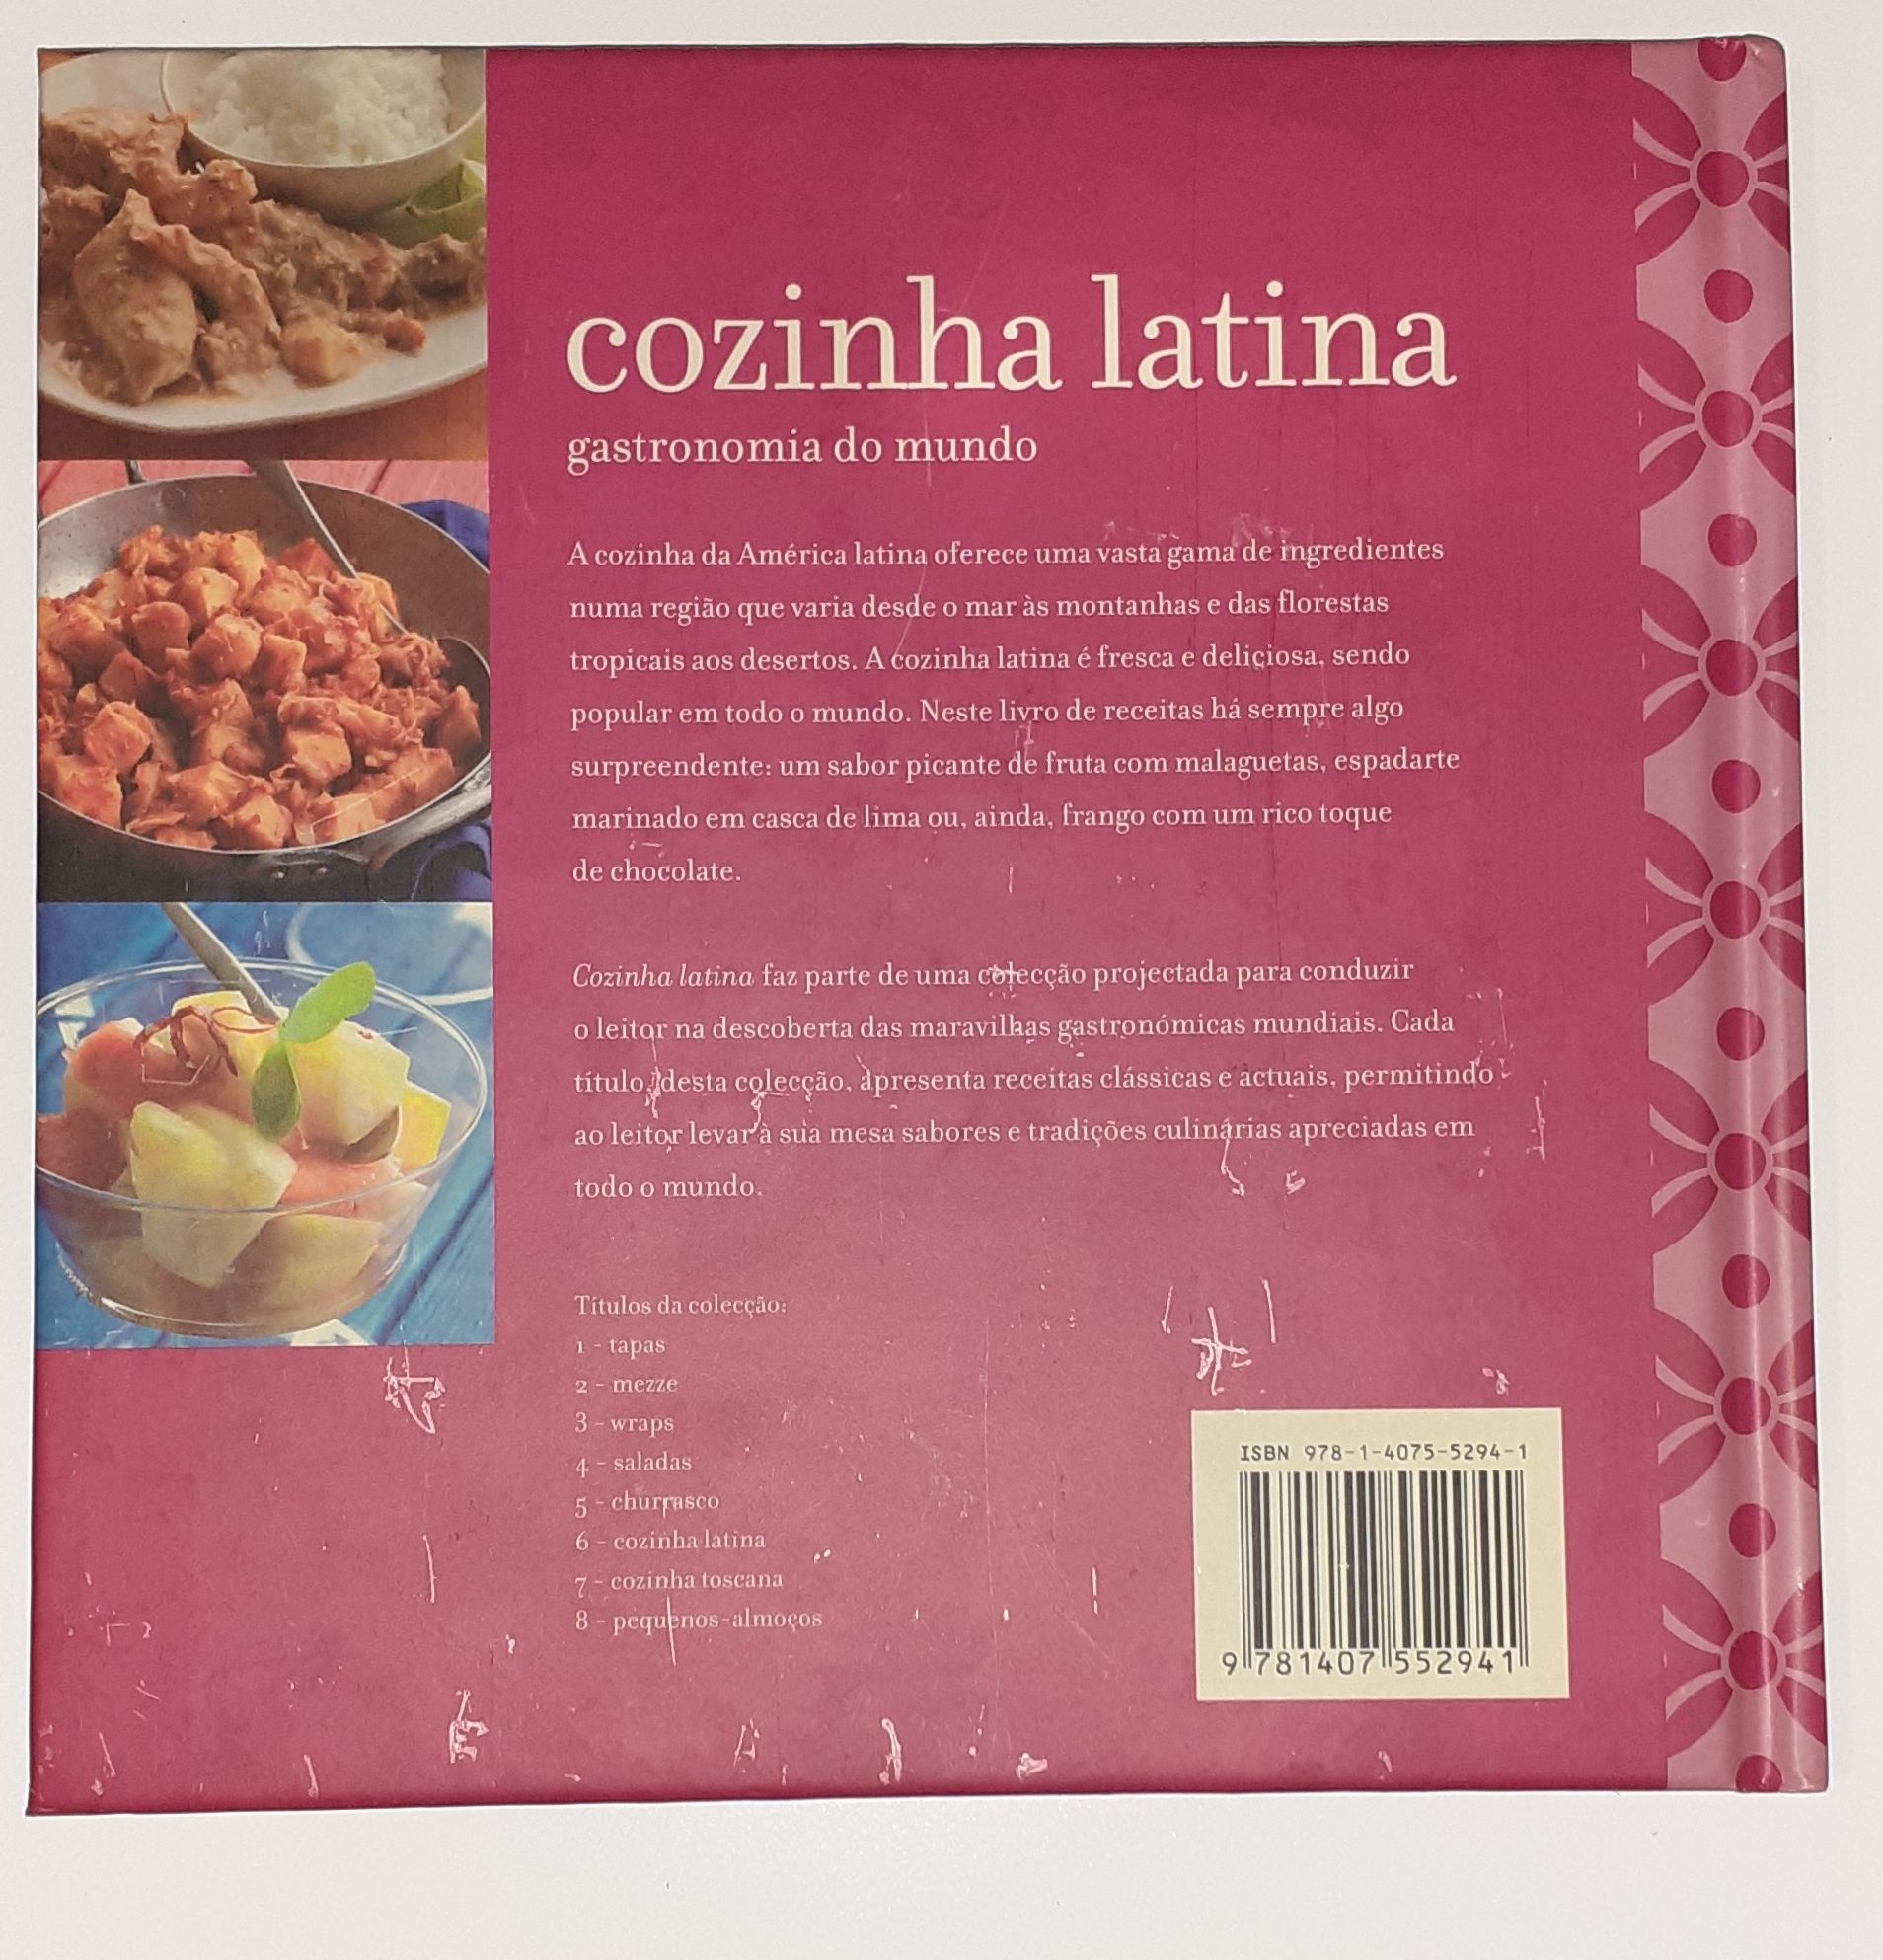 2 Livros "Saladas gastronomia do mundo" + "Cozinha latina gastronomia